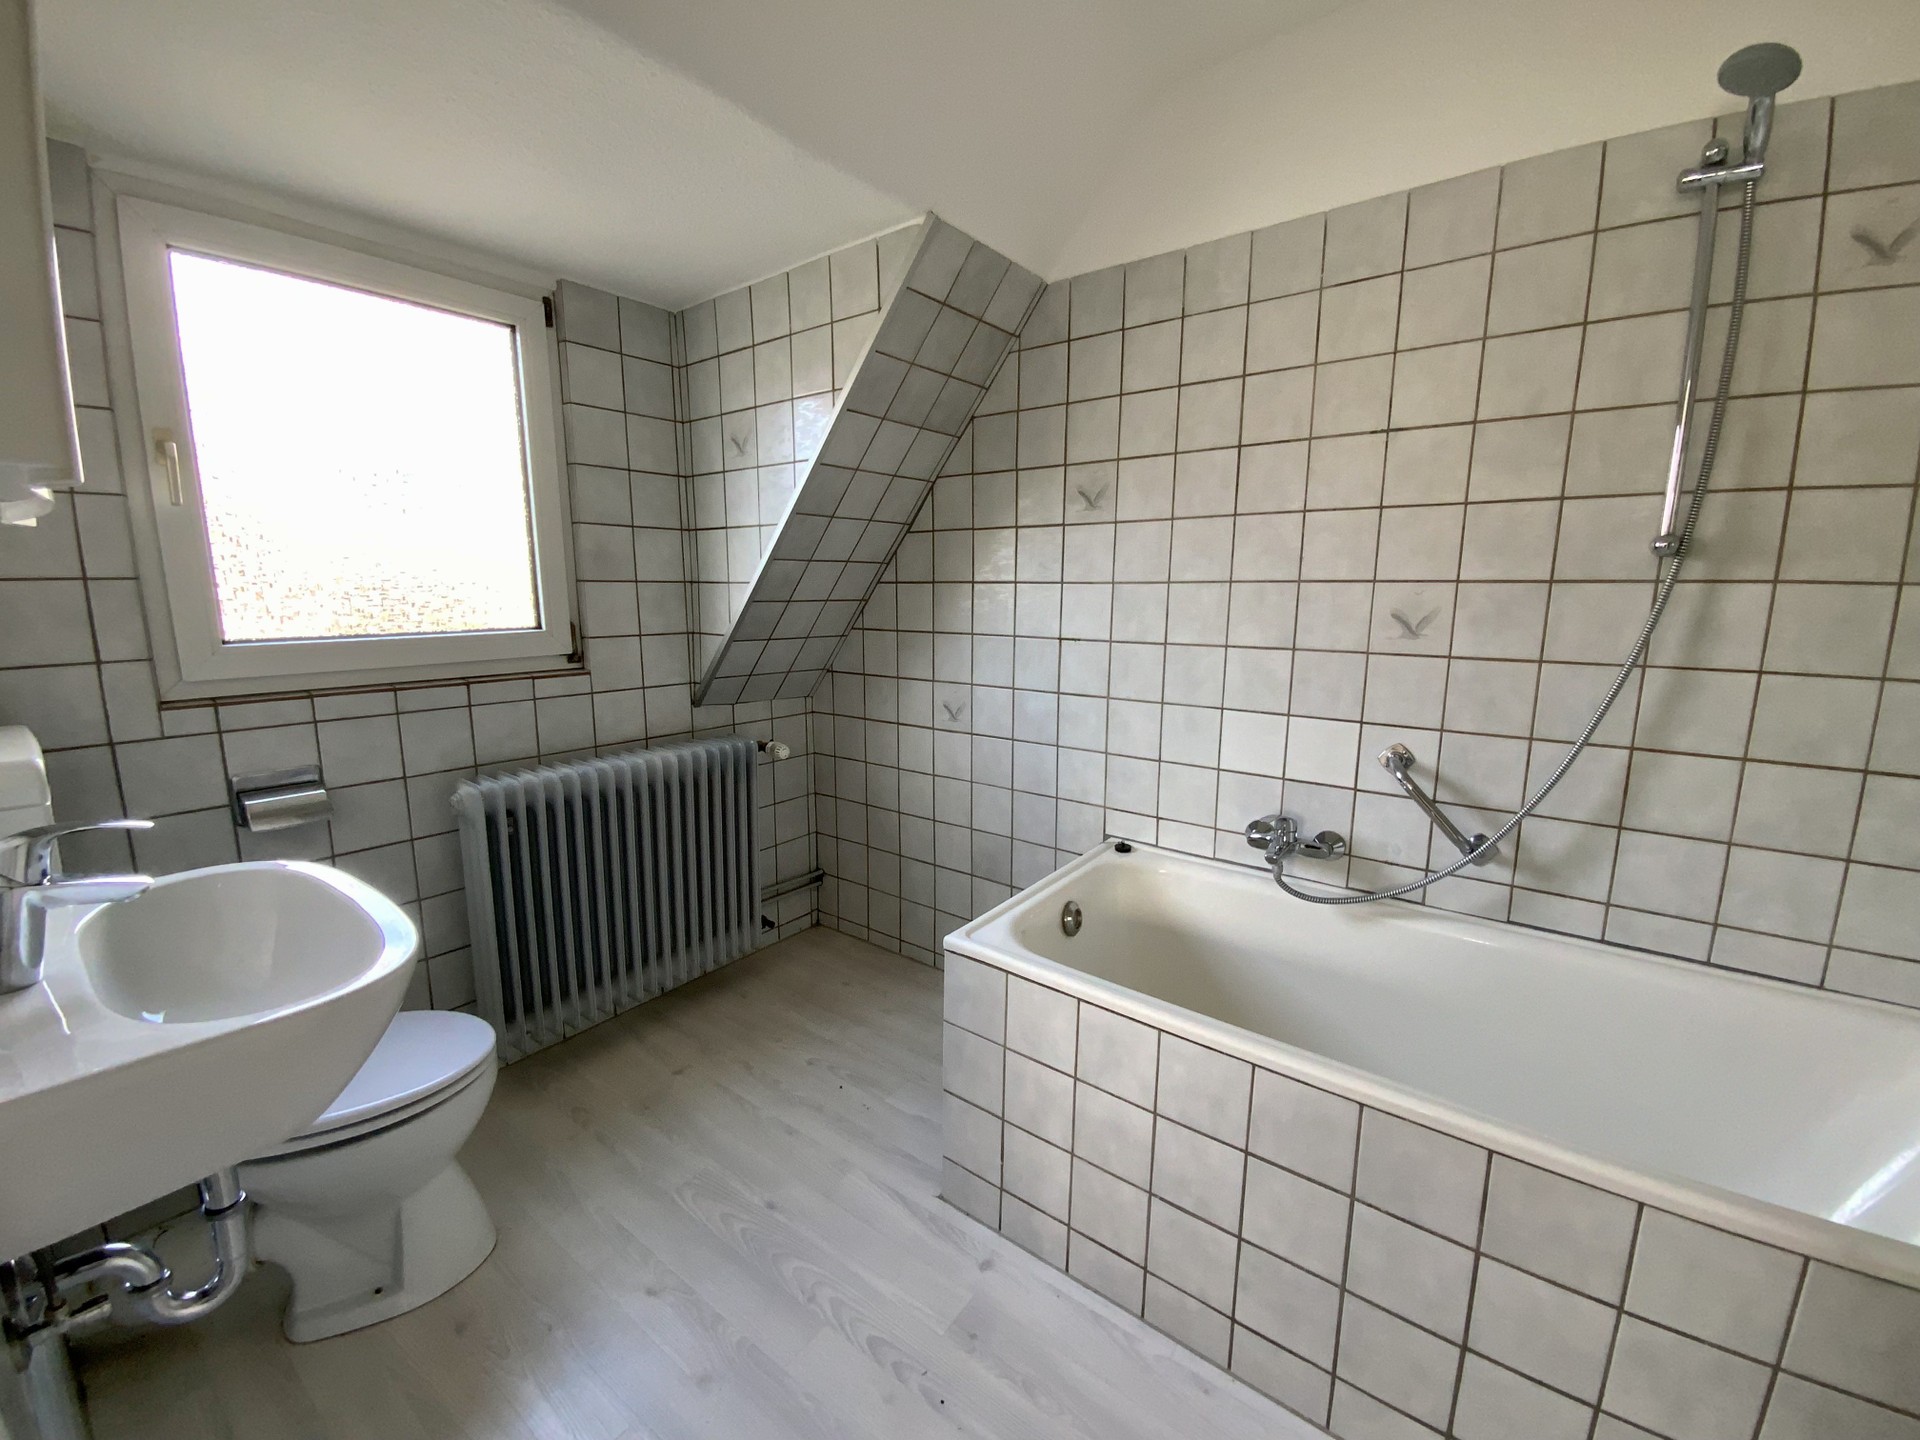 Haus in Otterberg - Badezimmer